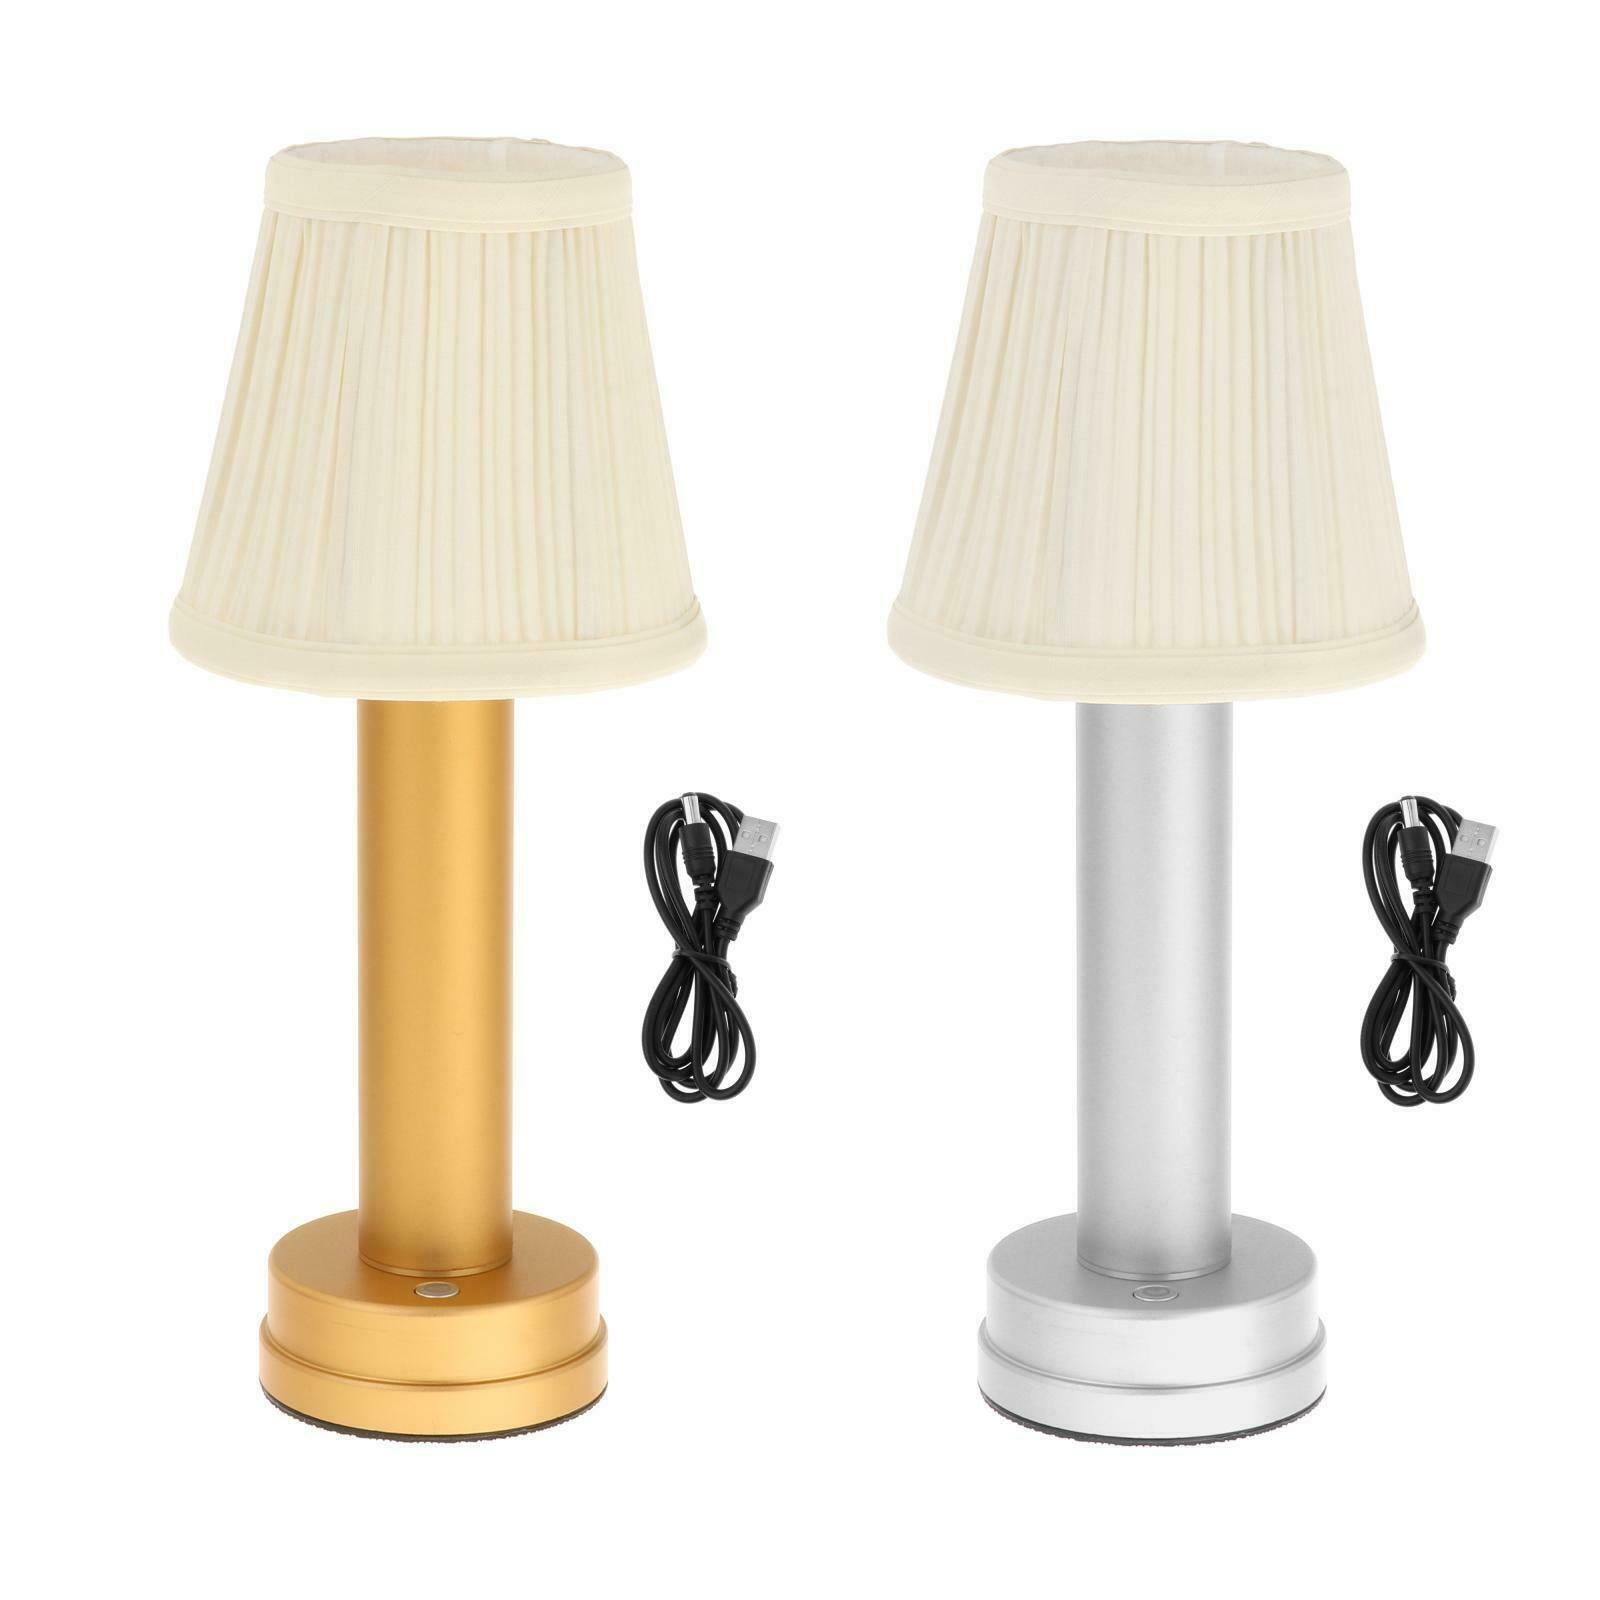 Modern Table Lamp Light Lamp Night Light Decorative Light Living Room Golden